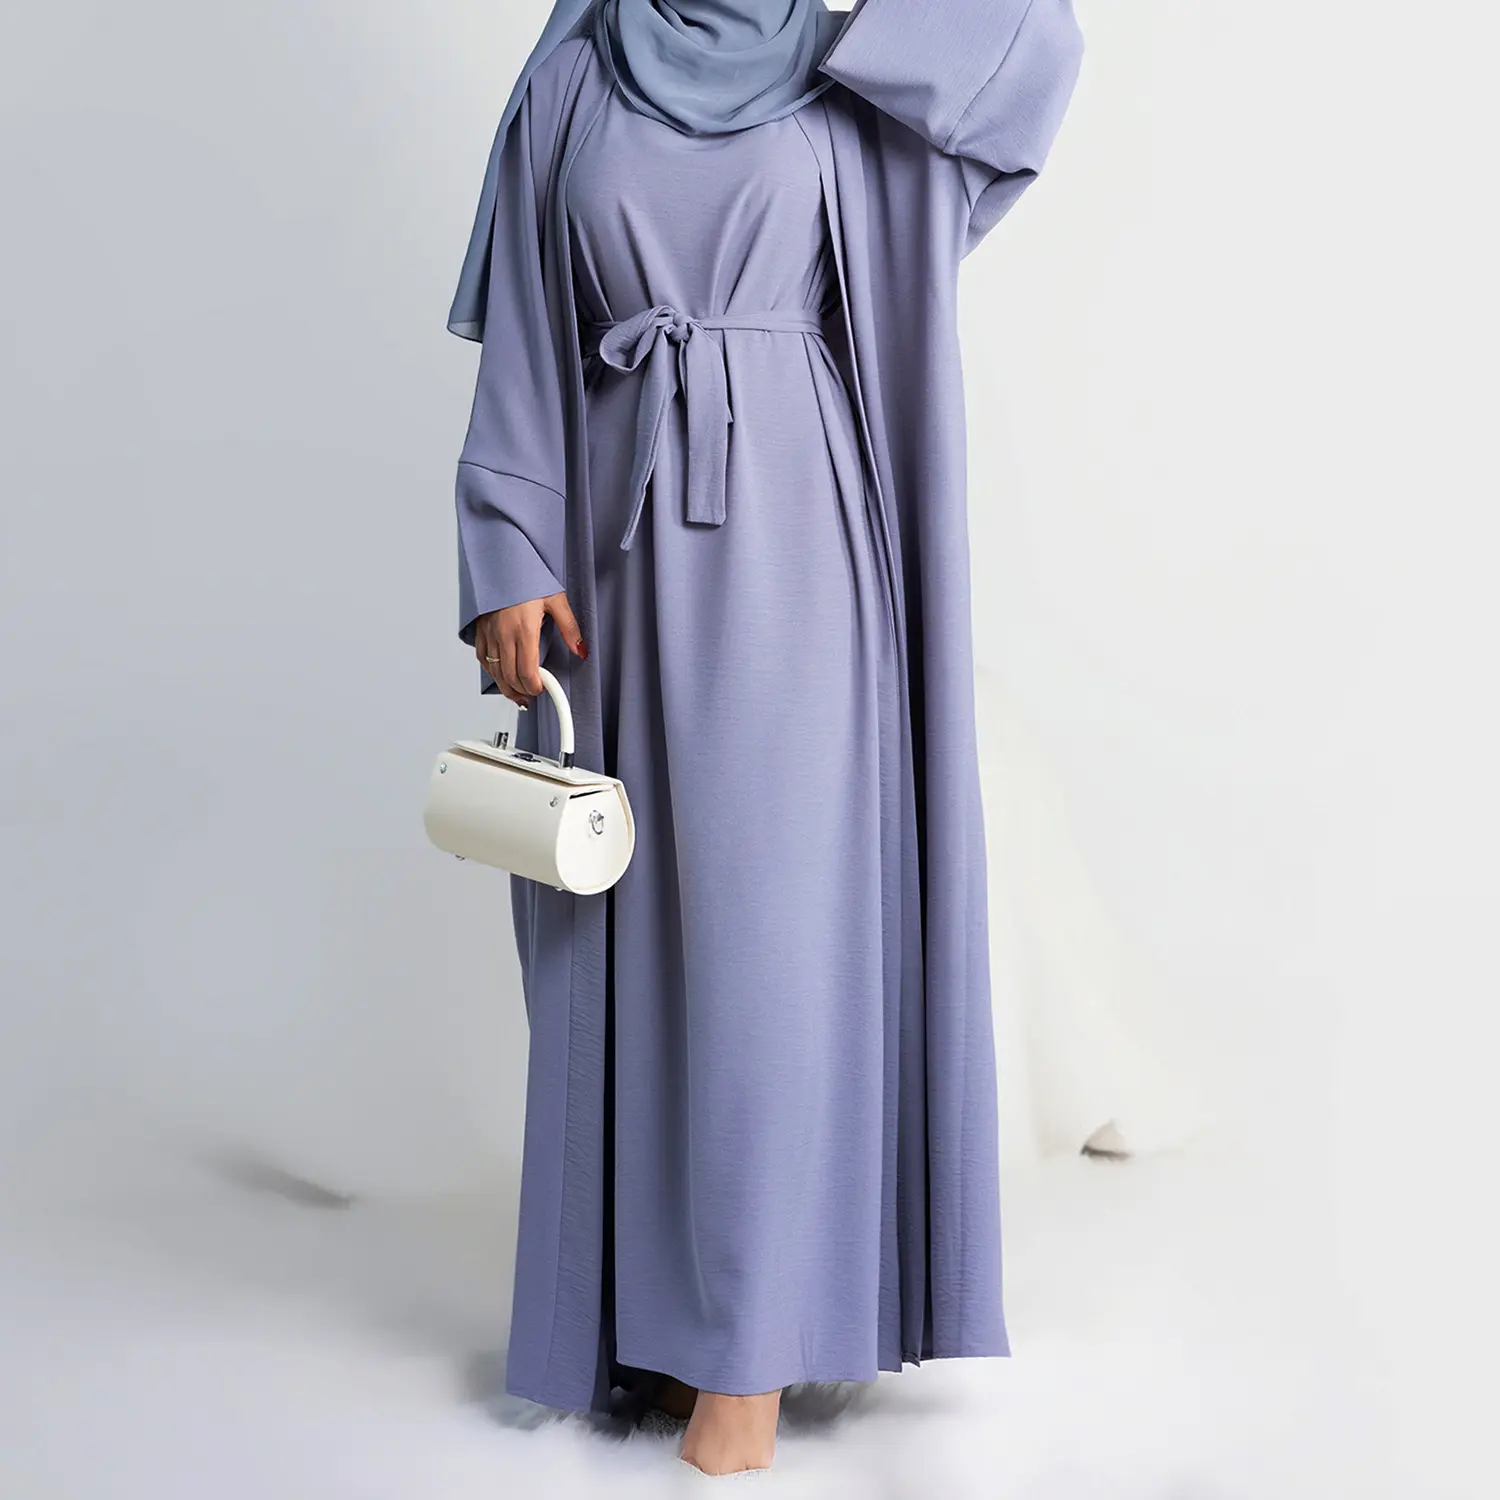 مصنع Yibaoli توريد تصميم جديد 11 لون ملابس الموضة للنساء في دبي ، طقم عباية من قطعتين للنساء المسلمات في دبي